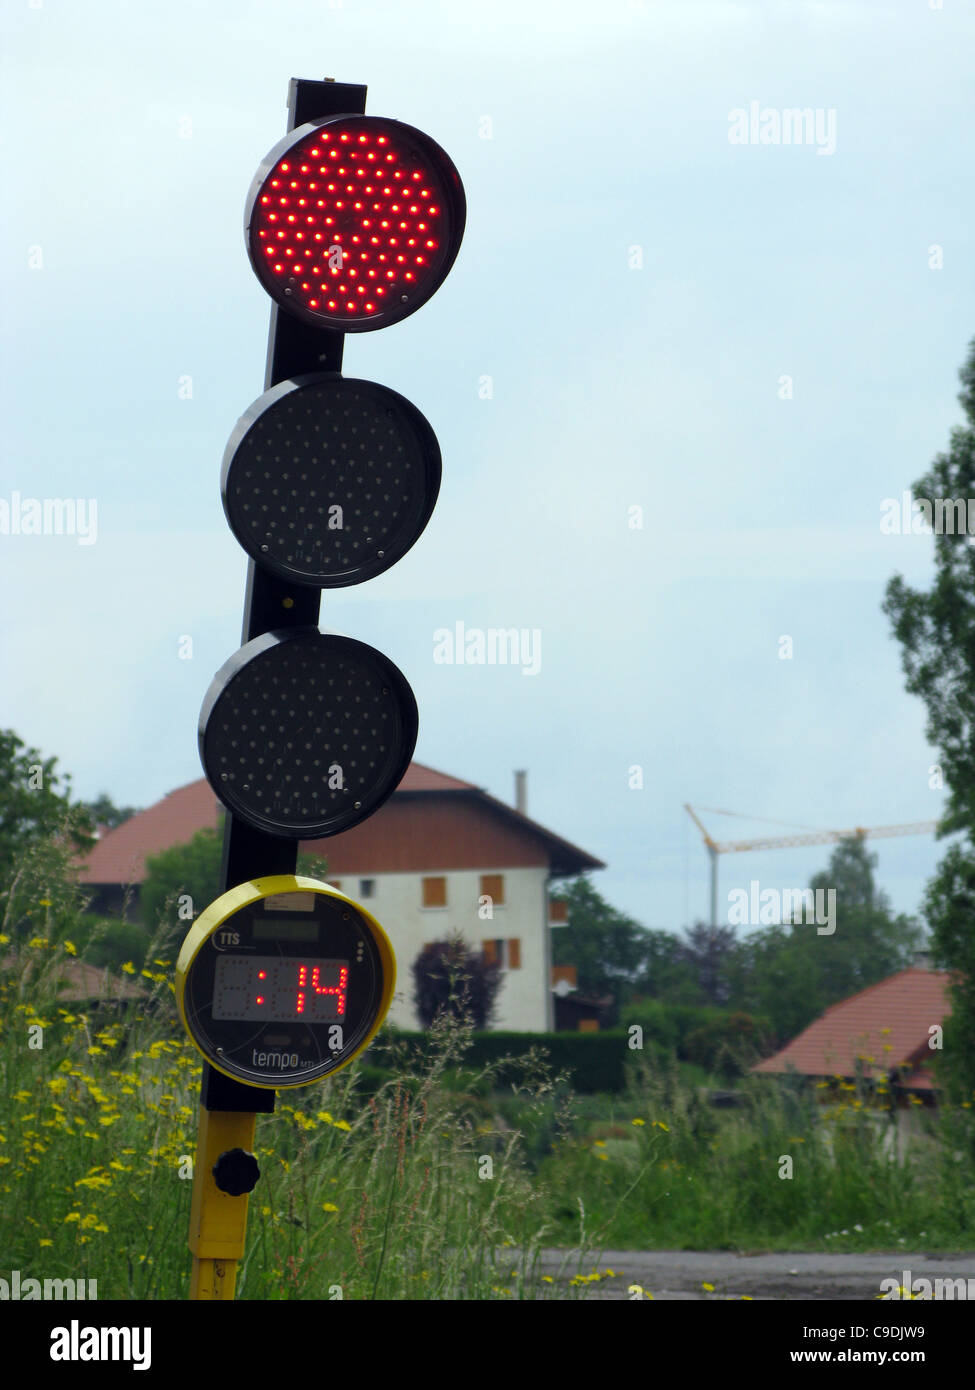 Semaforo con timer con conto alla rovescia display per mostrare quando la luce si modifica. Foto Stock